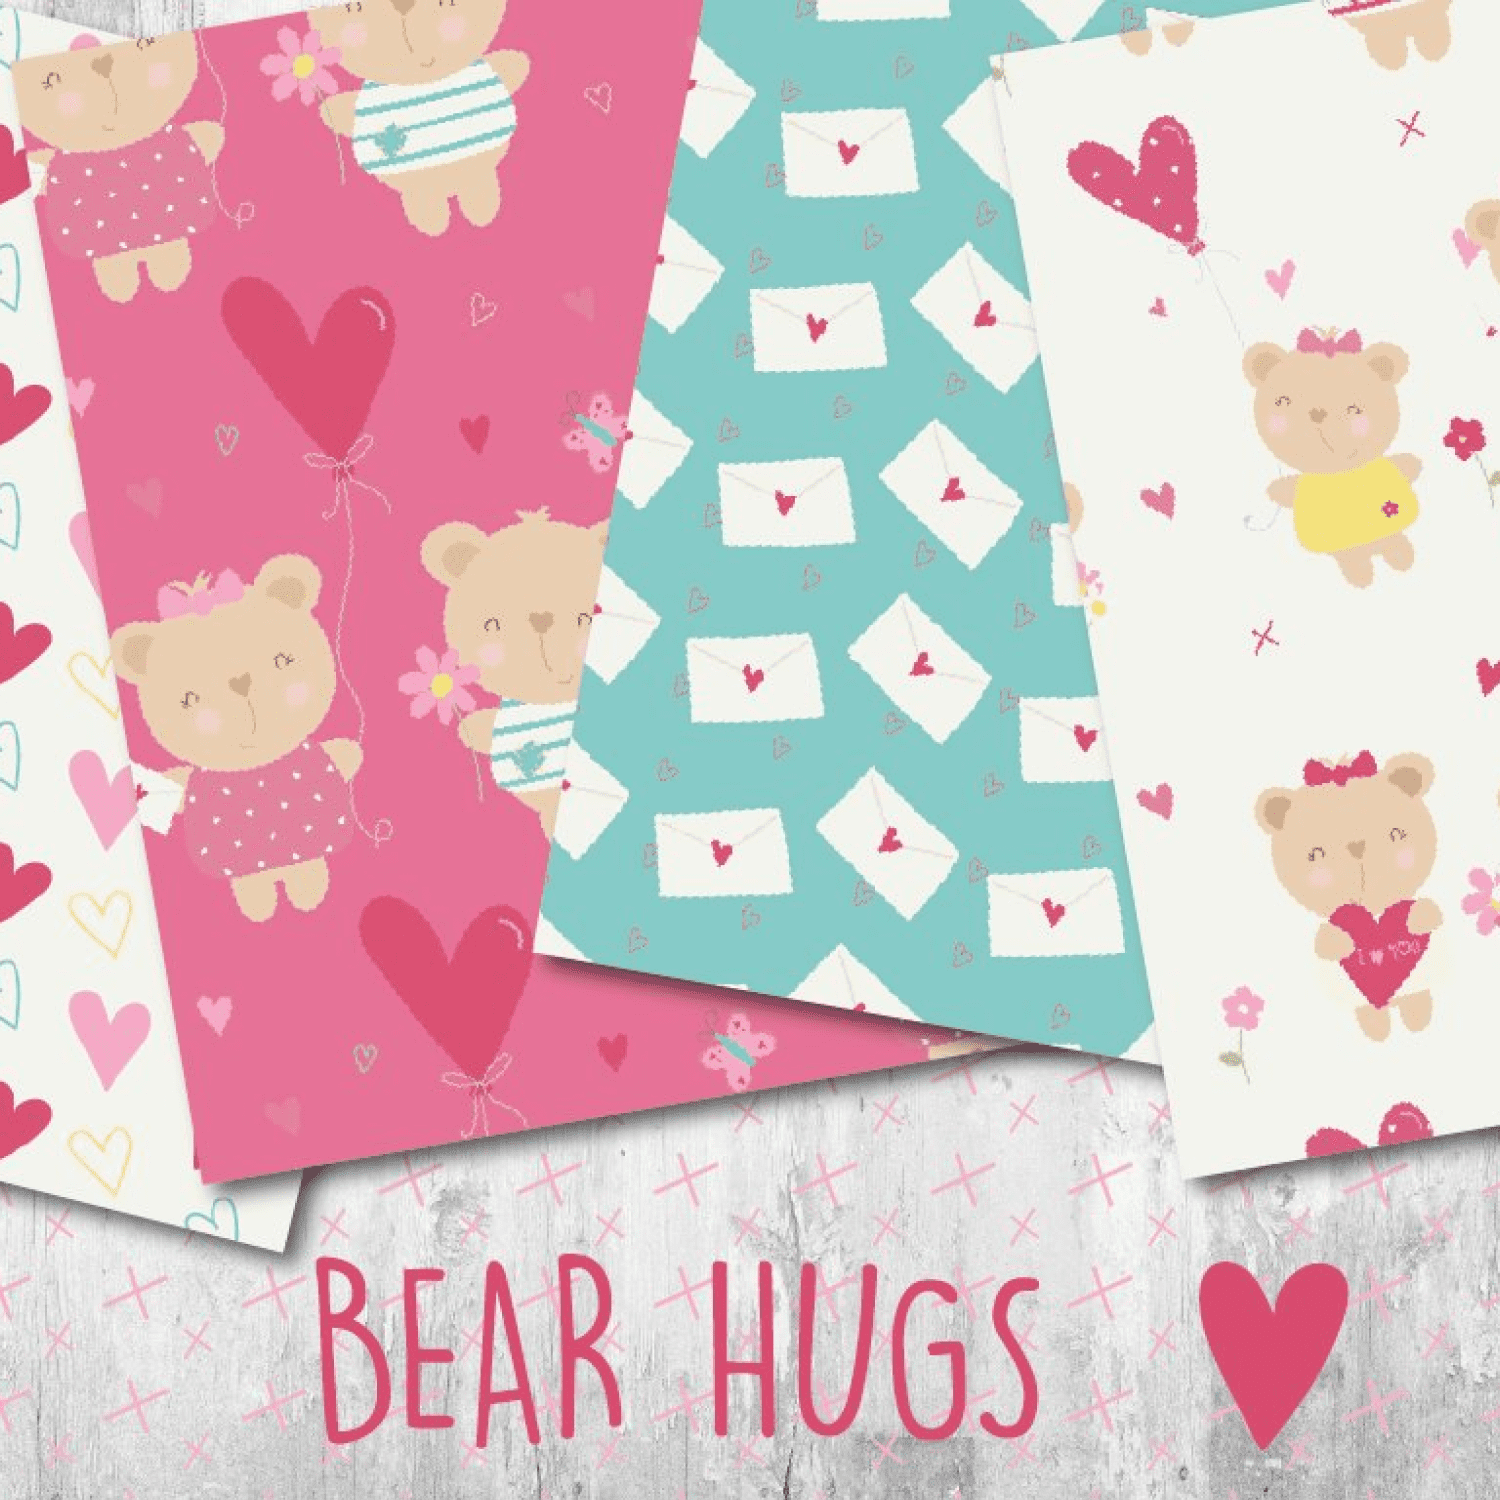 2bear hugs beautiful types of paper.